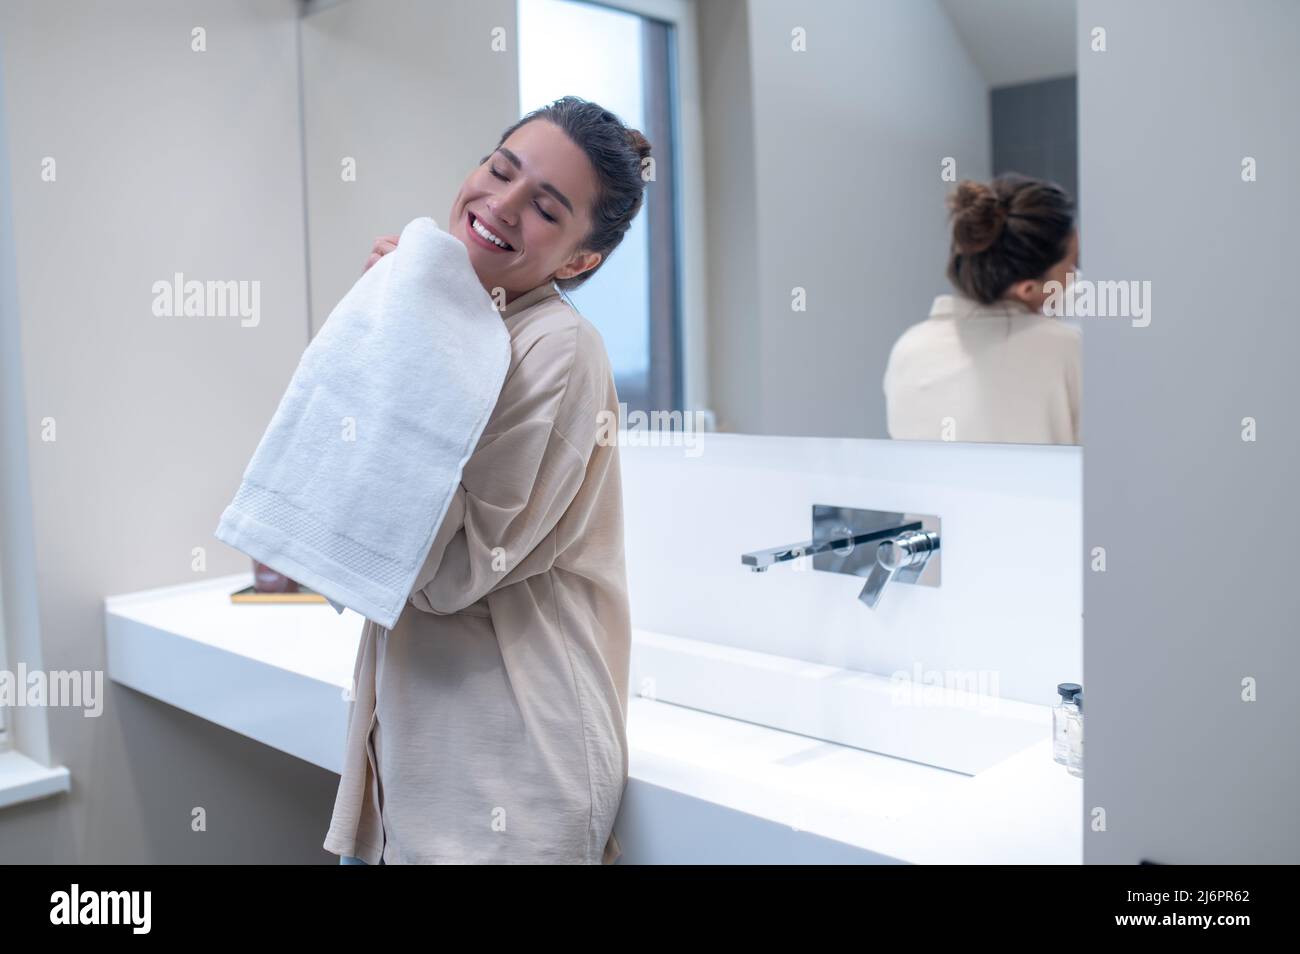 Femme souriante ayant l'air content et tenant une serviette fraîche entre les mains Banque D'Images